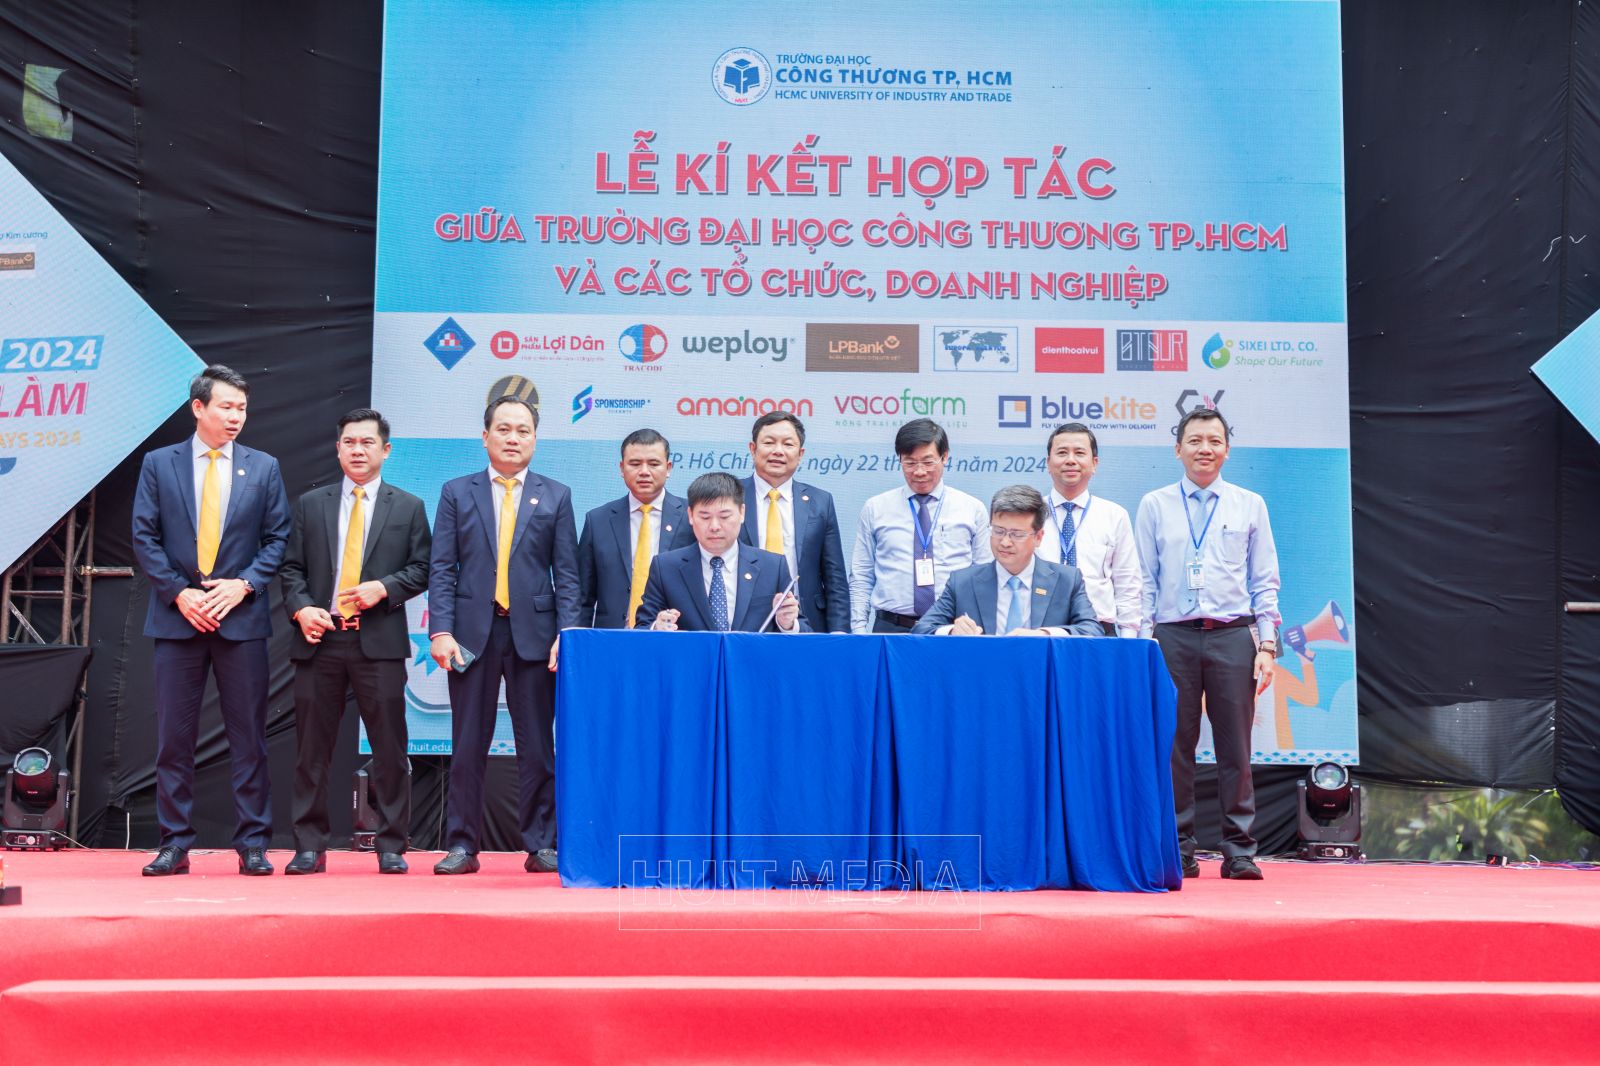 Lãnh đạo nhà trường chứng kiến lễ ký kết tác với Ngân hàng Bưu điện Liên Việt